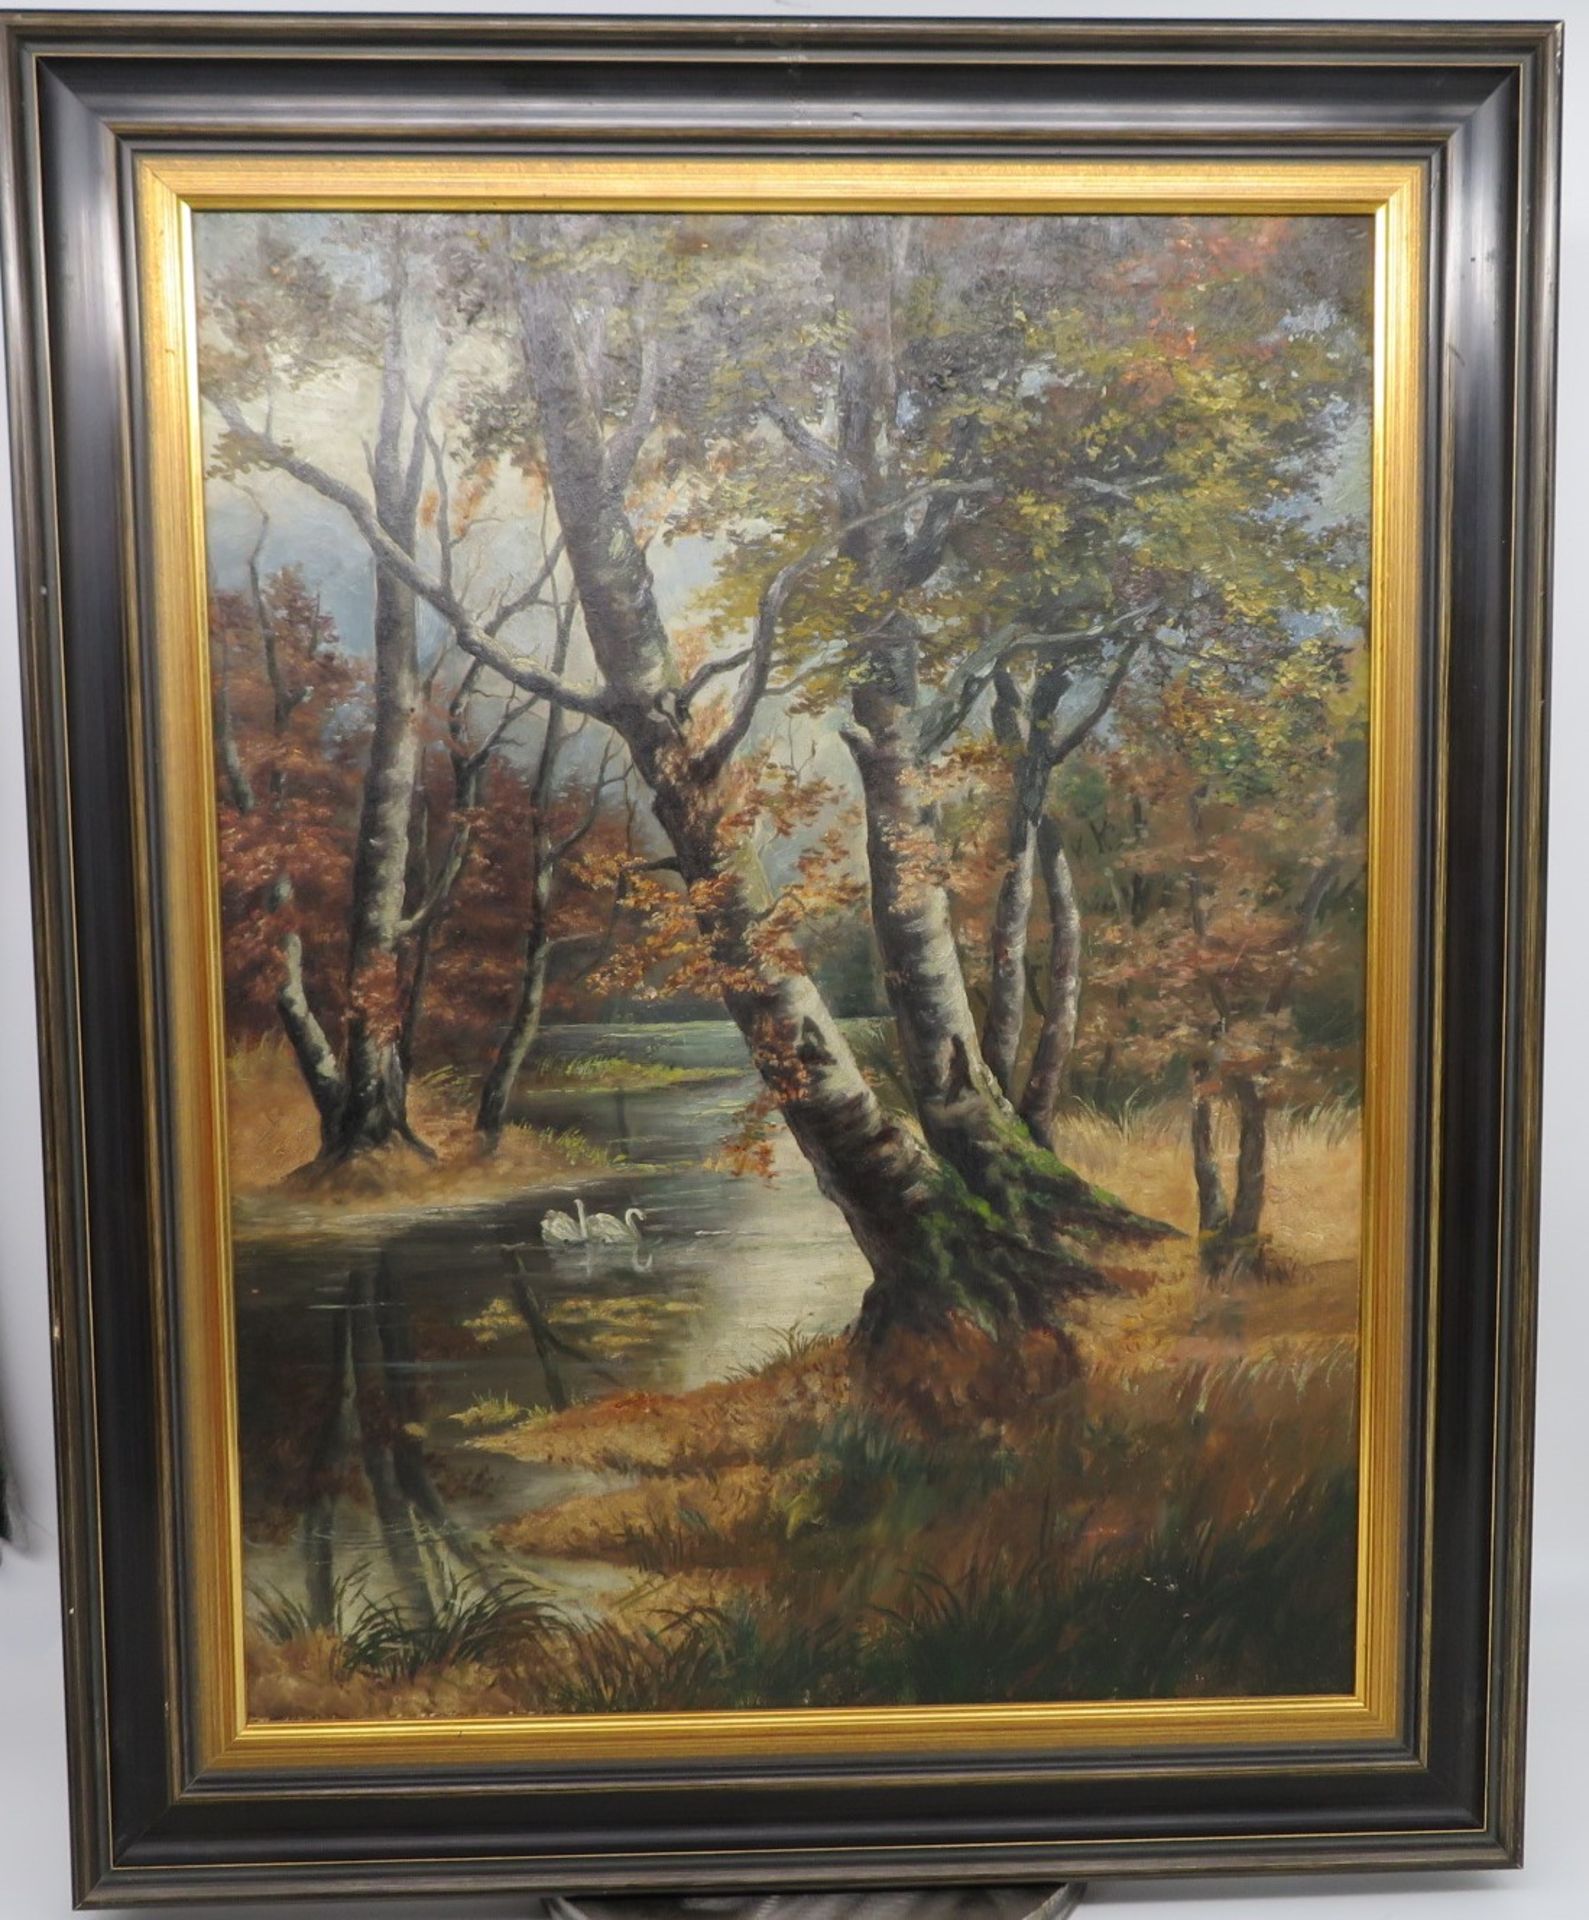 Unbekannt, 1. Hälfte 20. Jahrhundert, "Bewaldeter Flusslauf mit Schwänen", Öl/Leinwand, 56 x 43 cm,